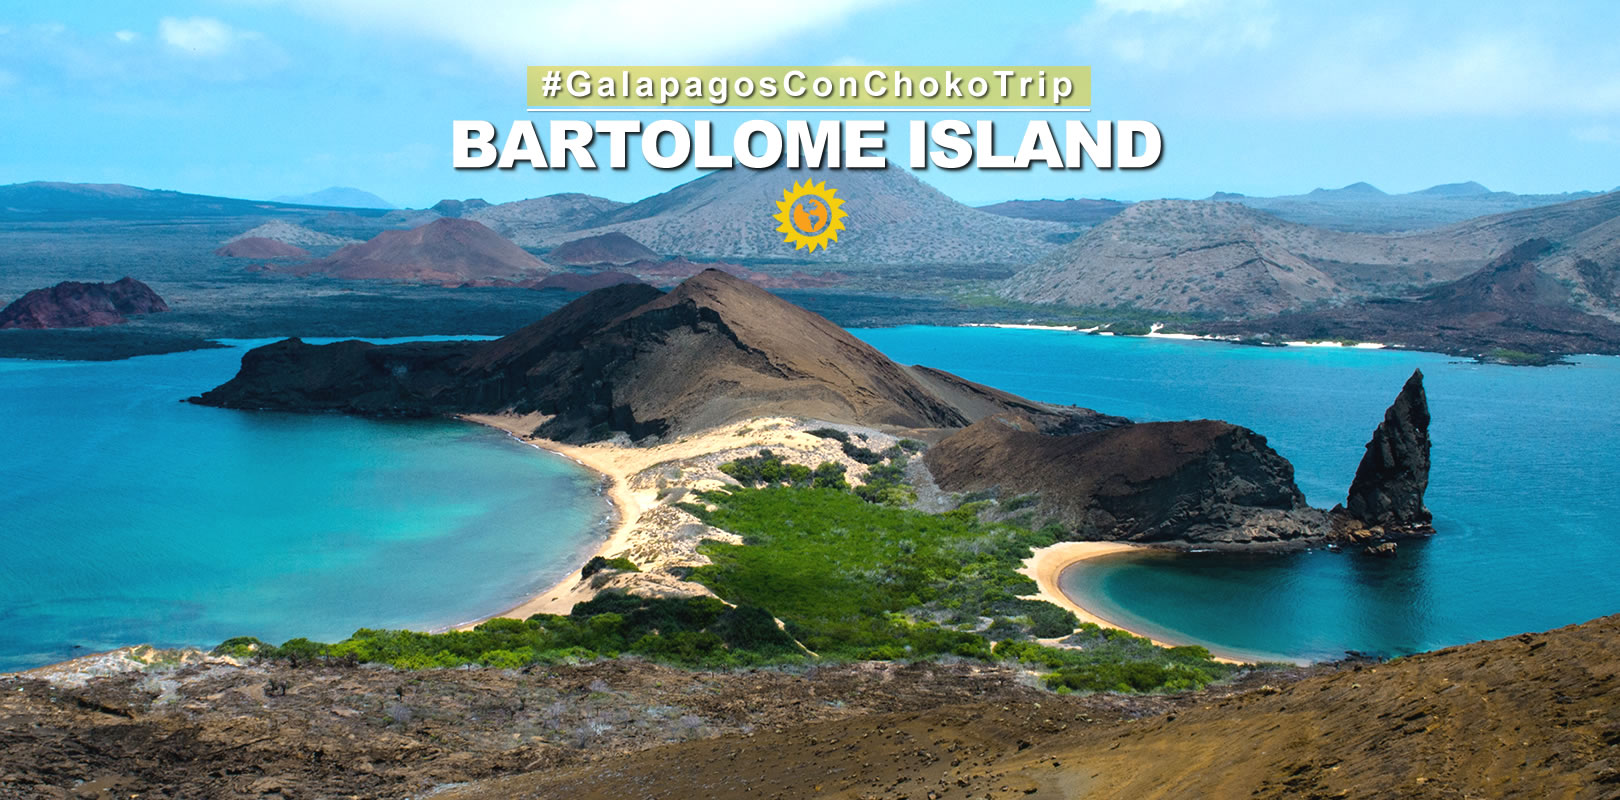 Bartolome Island Galapagos Islands